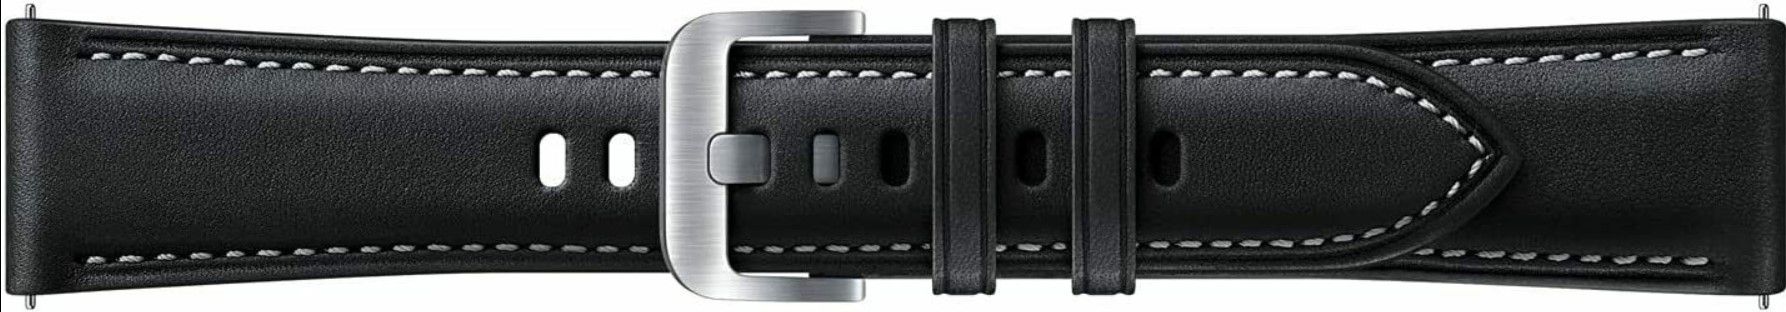 Stitch Leder Armband für Samsung Galaxy Watch 3 [20 u. 22mm] für je 6,90€ (statt 10€)